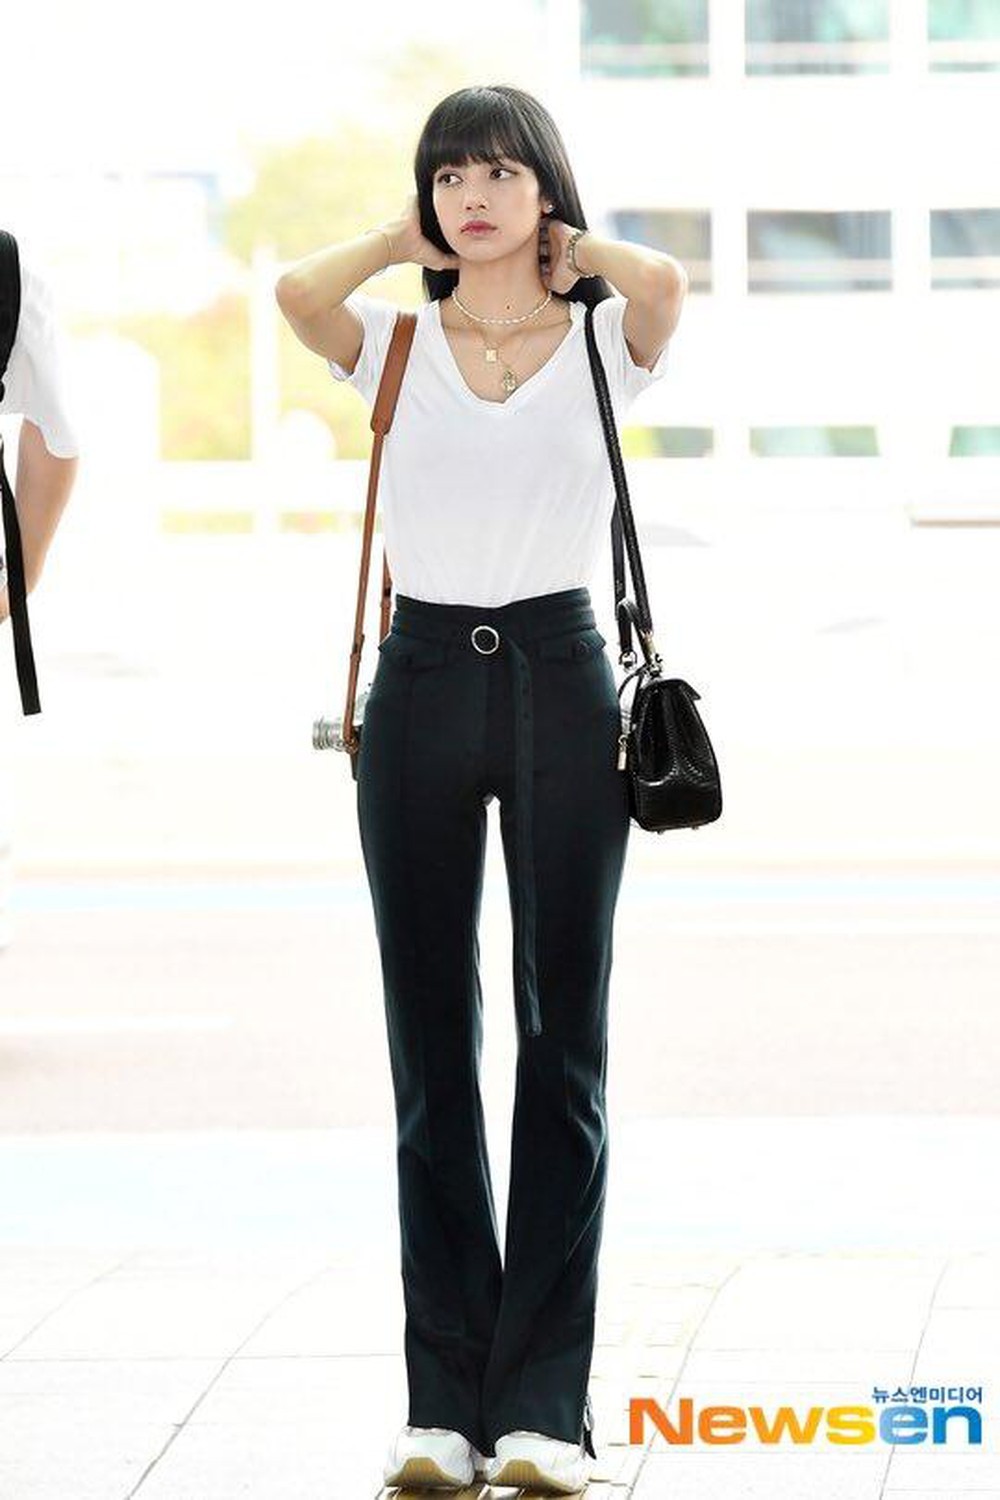  
Cô nàng thường chọn những mẫu quần làm tăng thêm độ dài của đôi chân mình. (Ảnh: Naver)